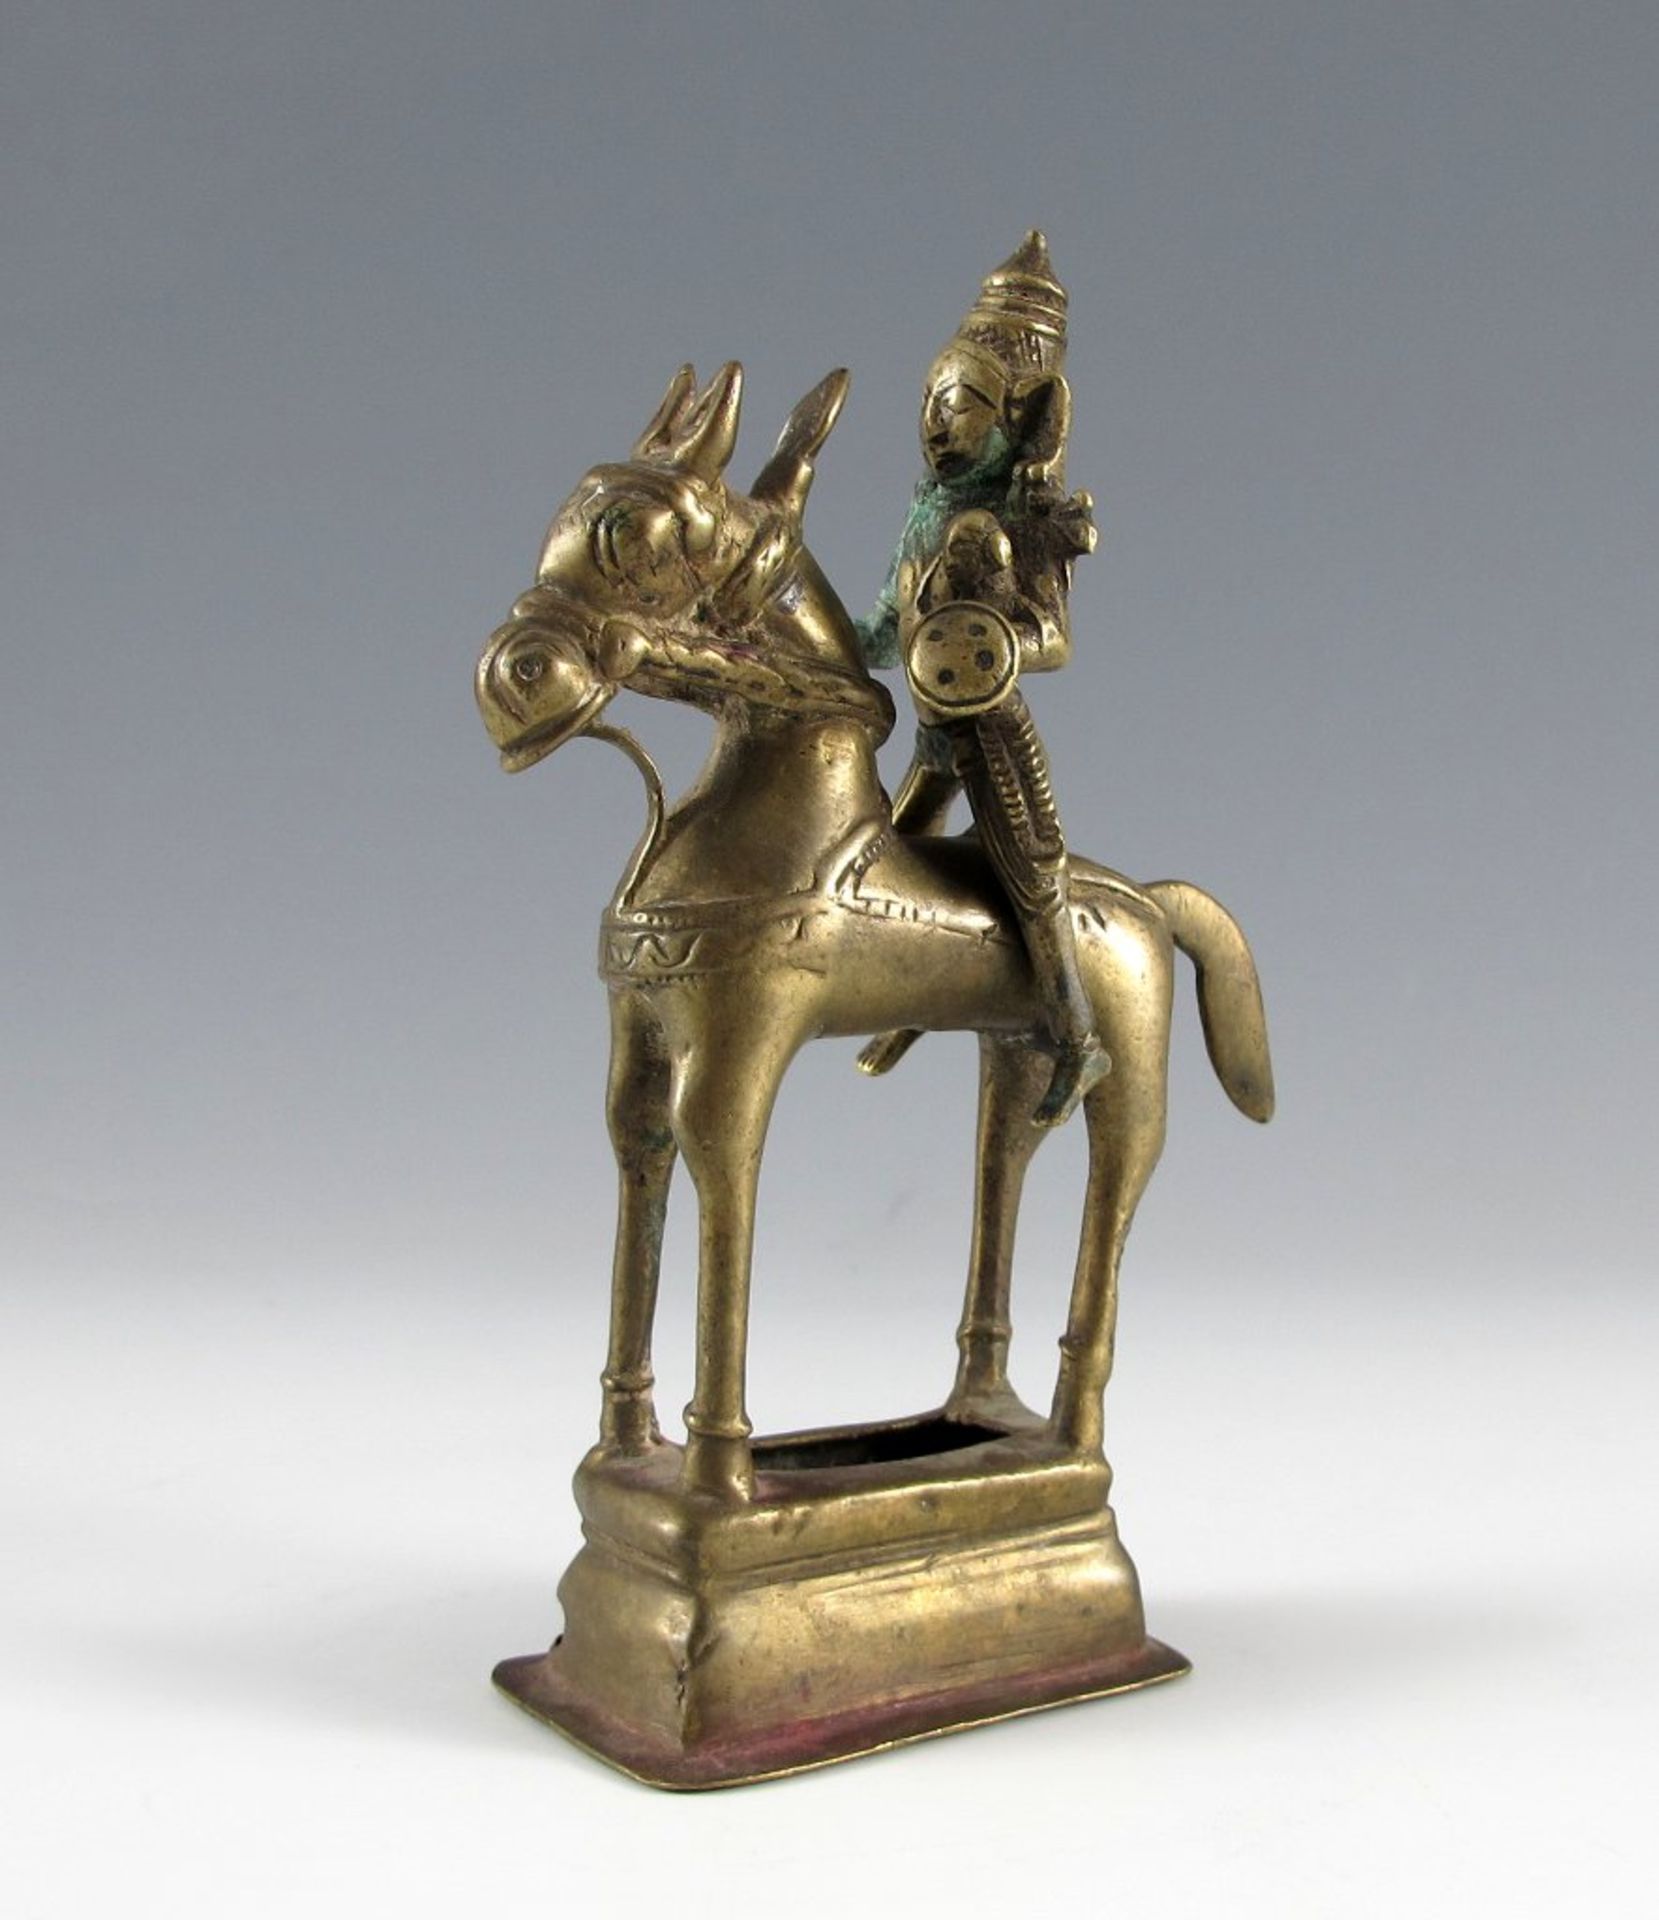 Votivgabe. Shiva zu Pferd. Messing. Orissa, um 1900. H 17 cm